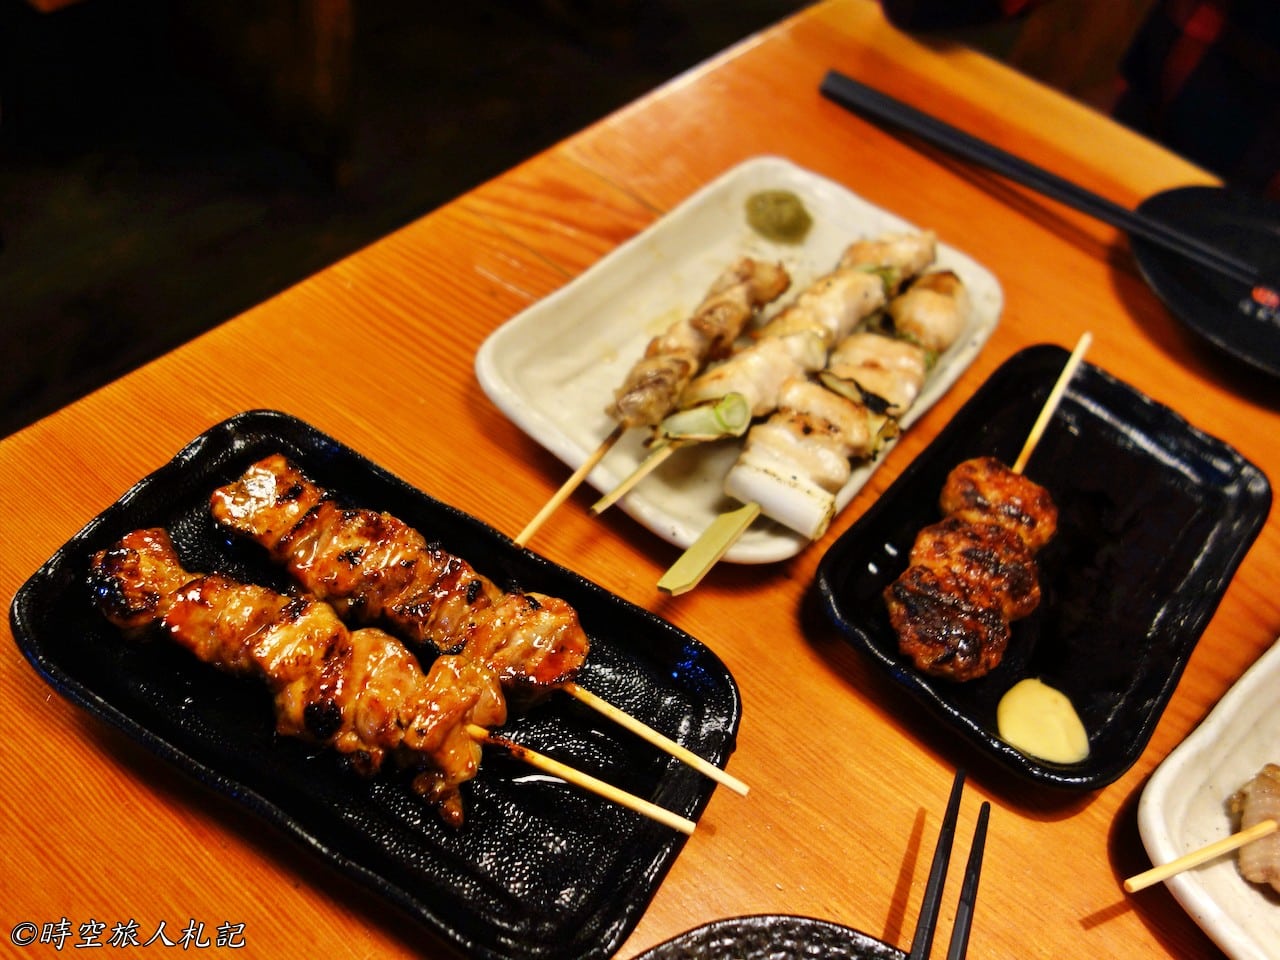 神戶美食,kobe-food,日本神戶美食 39